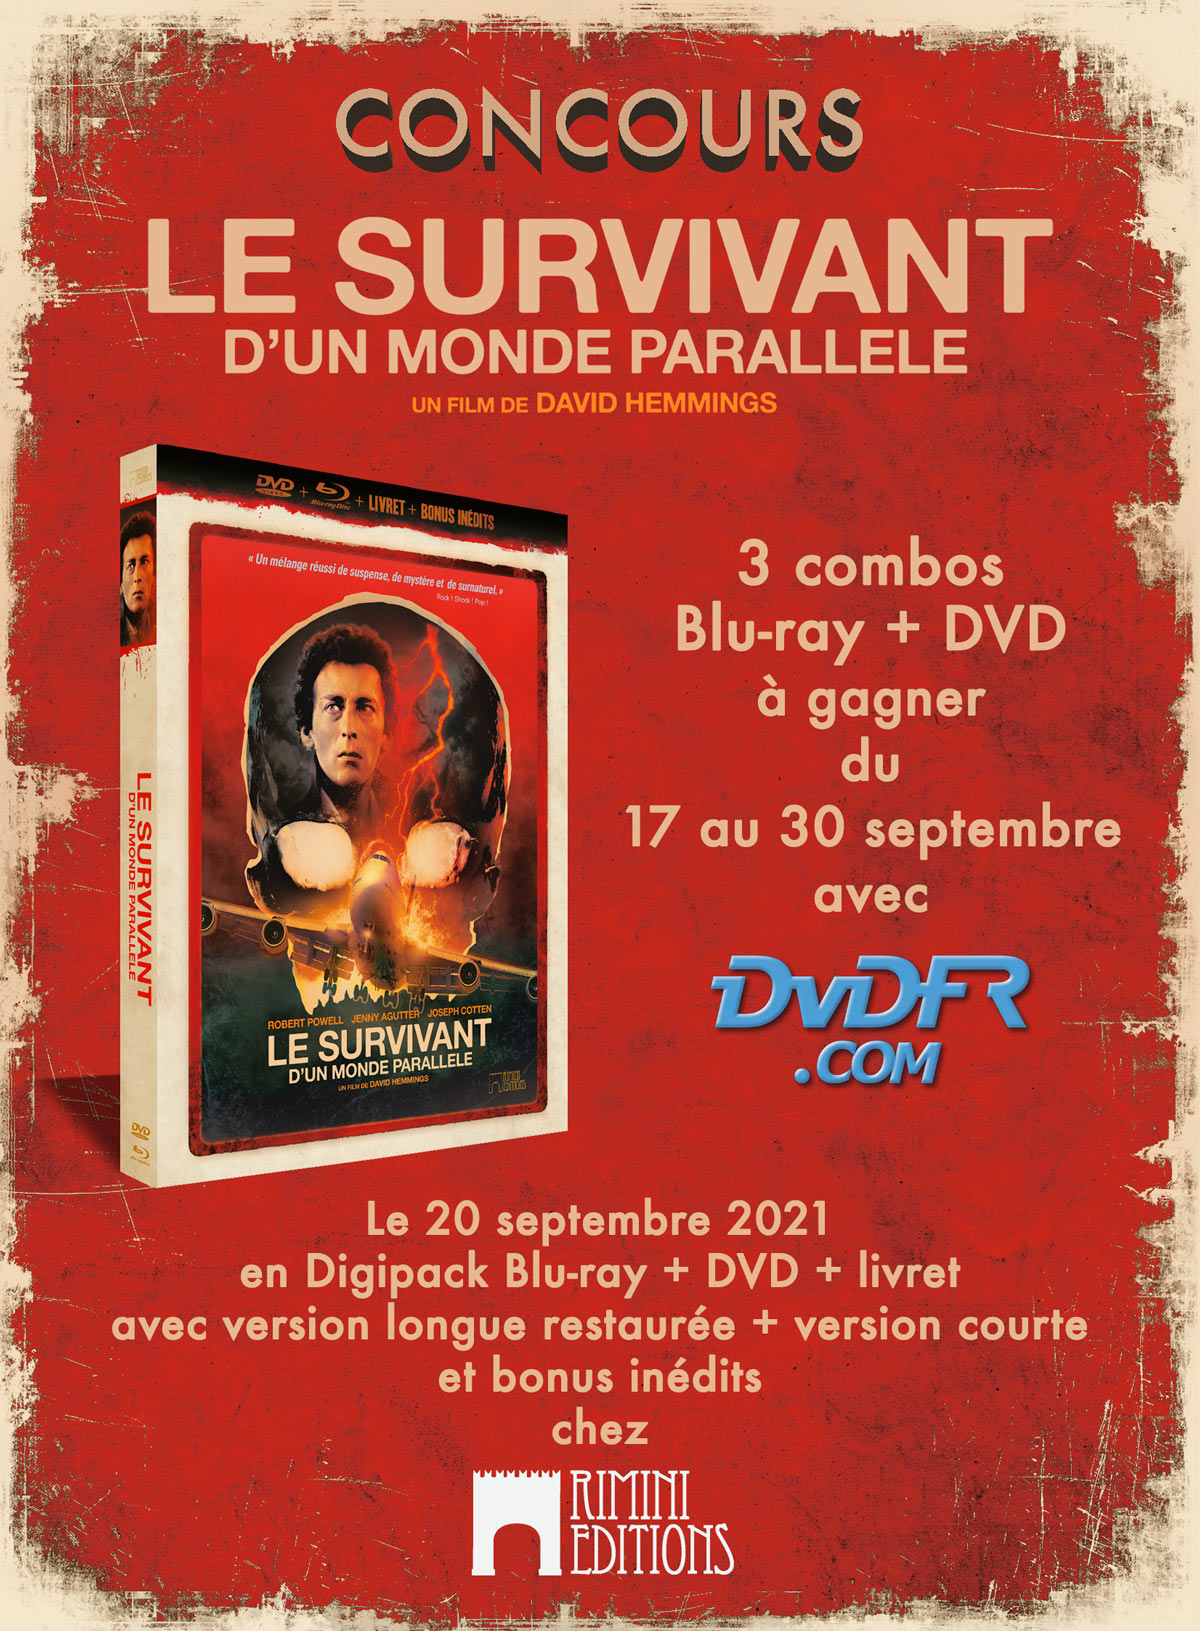 Concours - Le Survivant d'un monde parallèle - Blu-ray + DVD + Livret - Rimini Editions